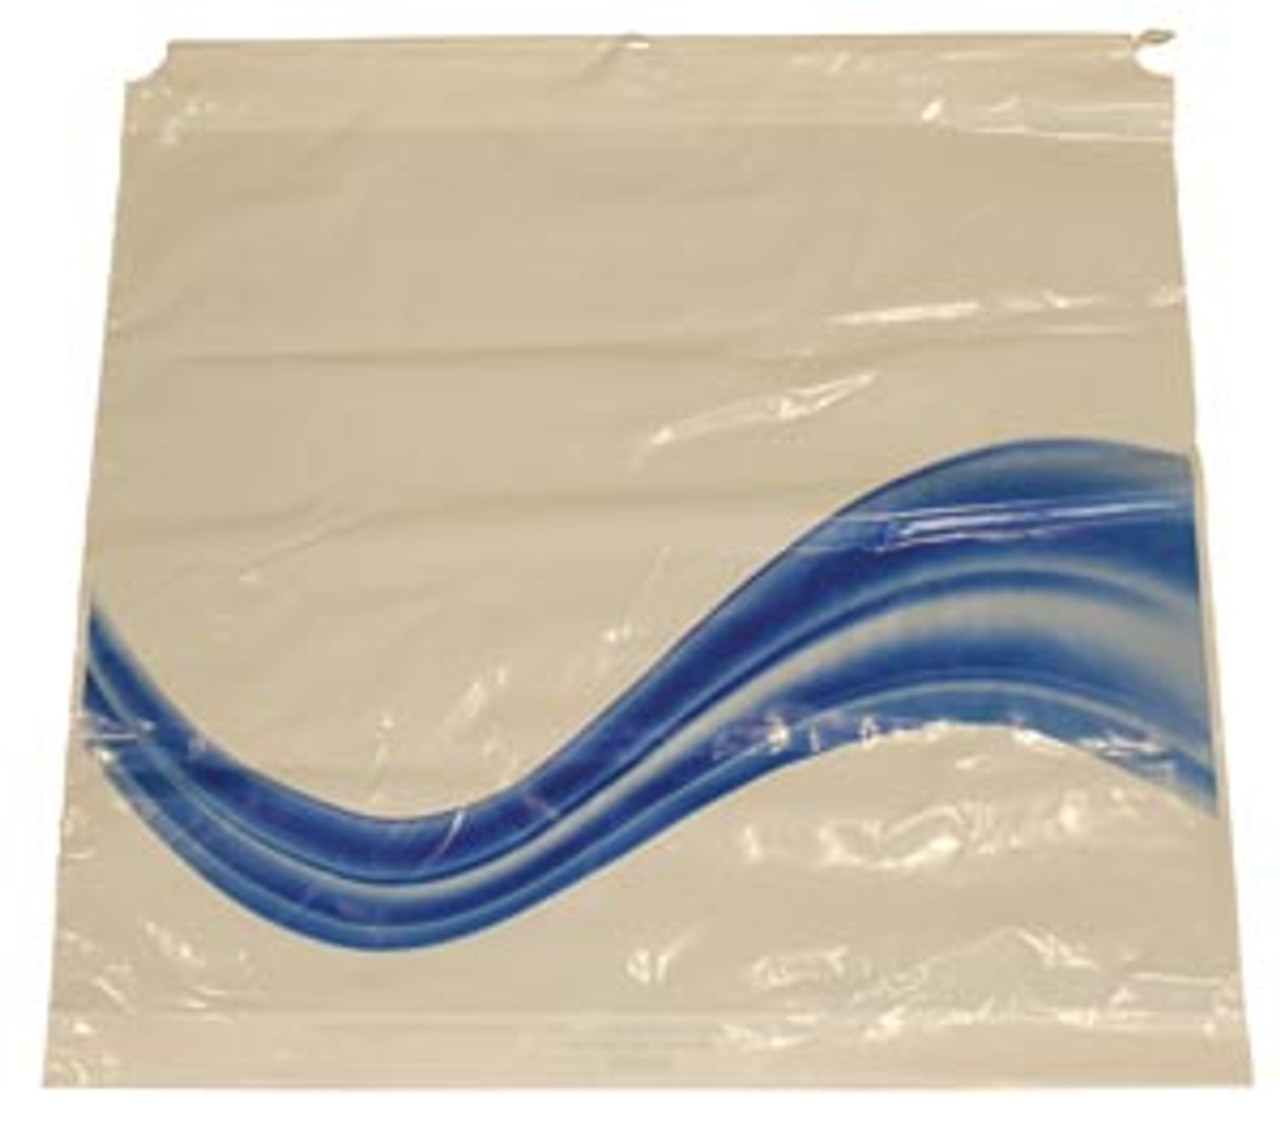 NWI Personal Bag Drawstring , 11" x 17", 1.5 ml, 1000/cs